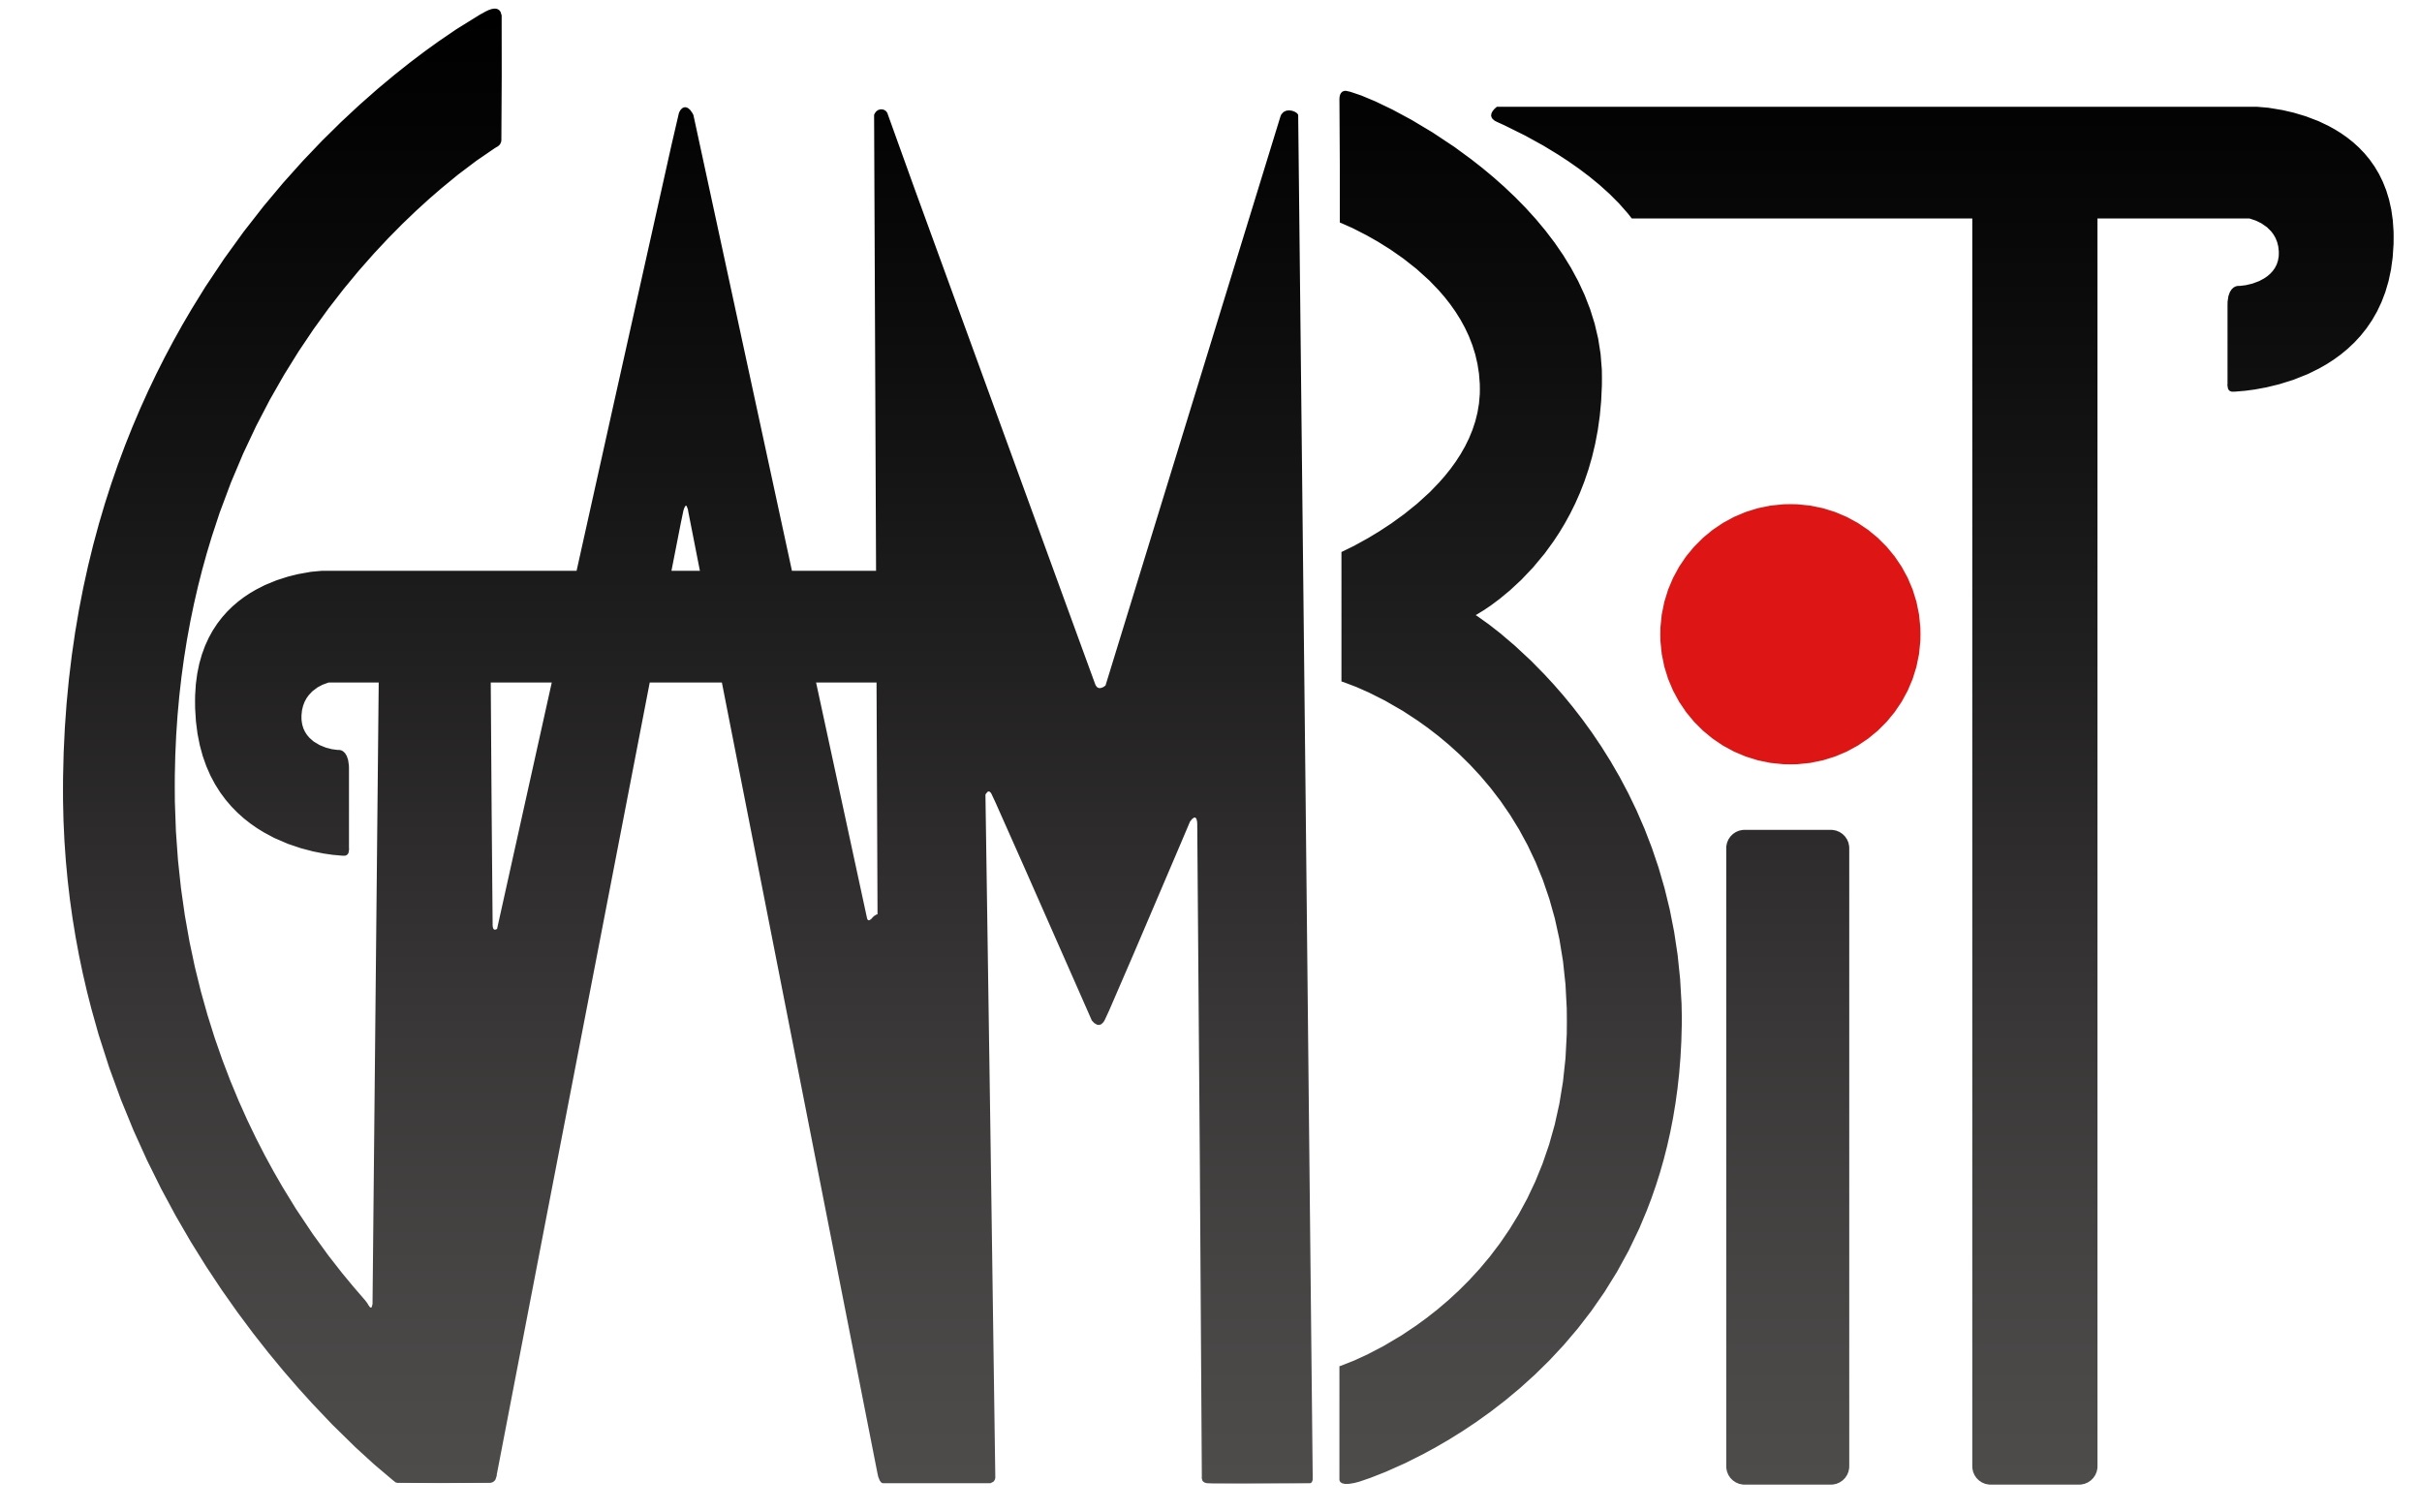 GAMBIT Logo.jpg 77258aa19d8d22a8388429a24737ba35